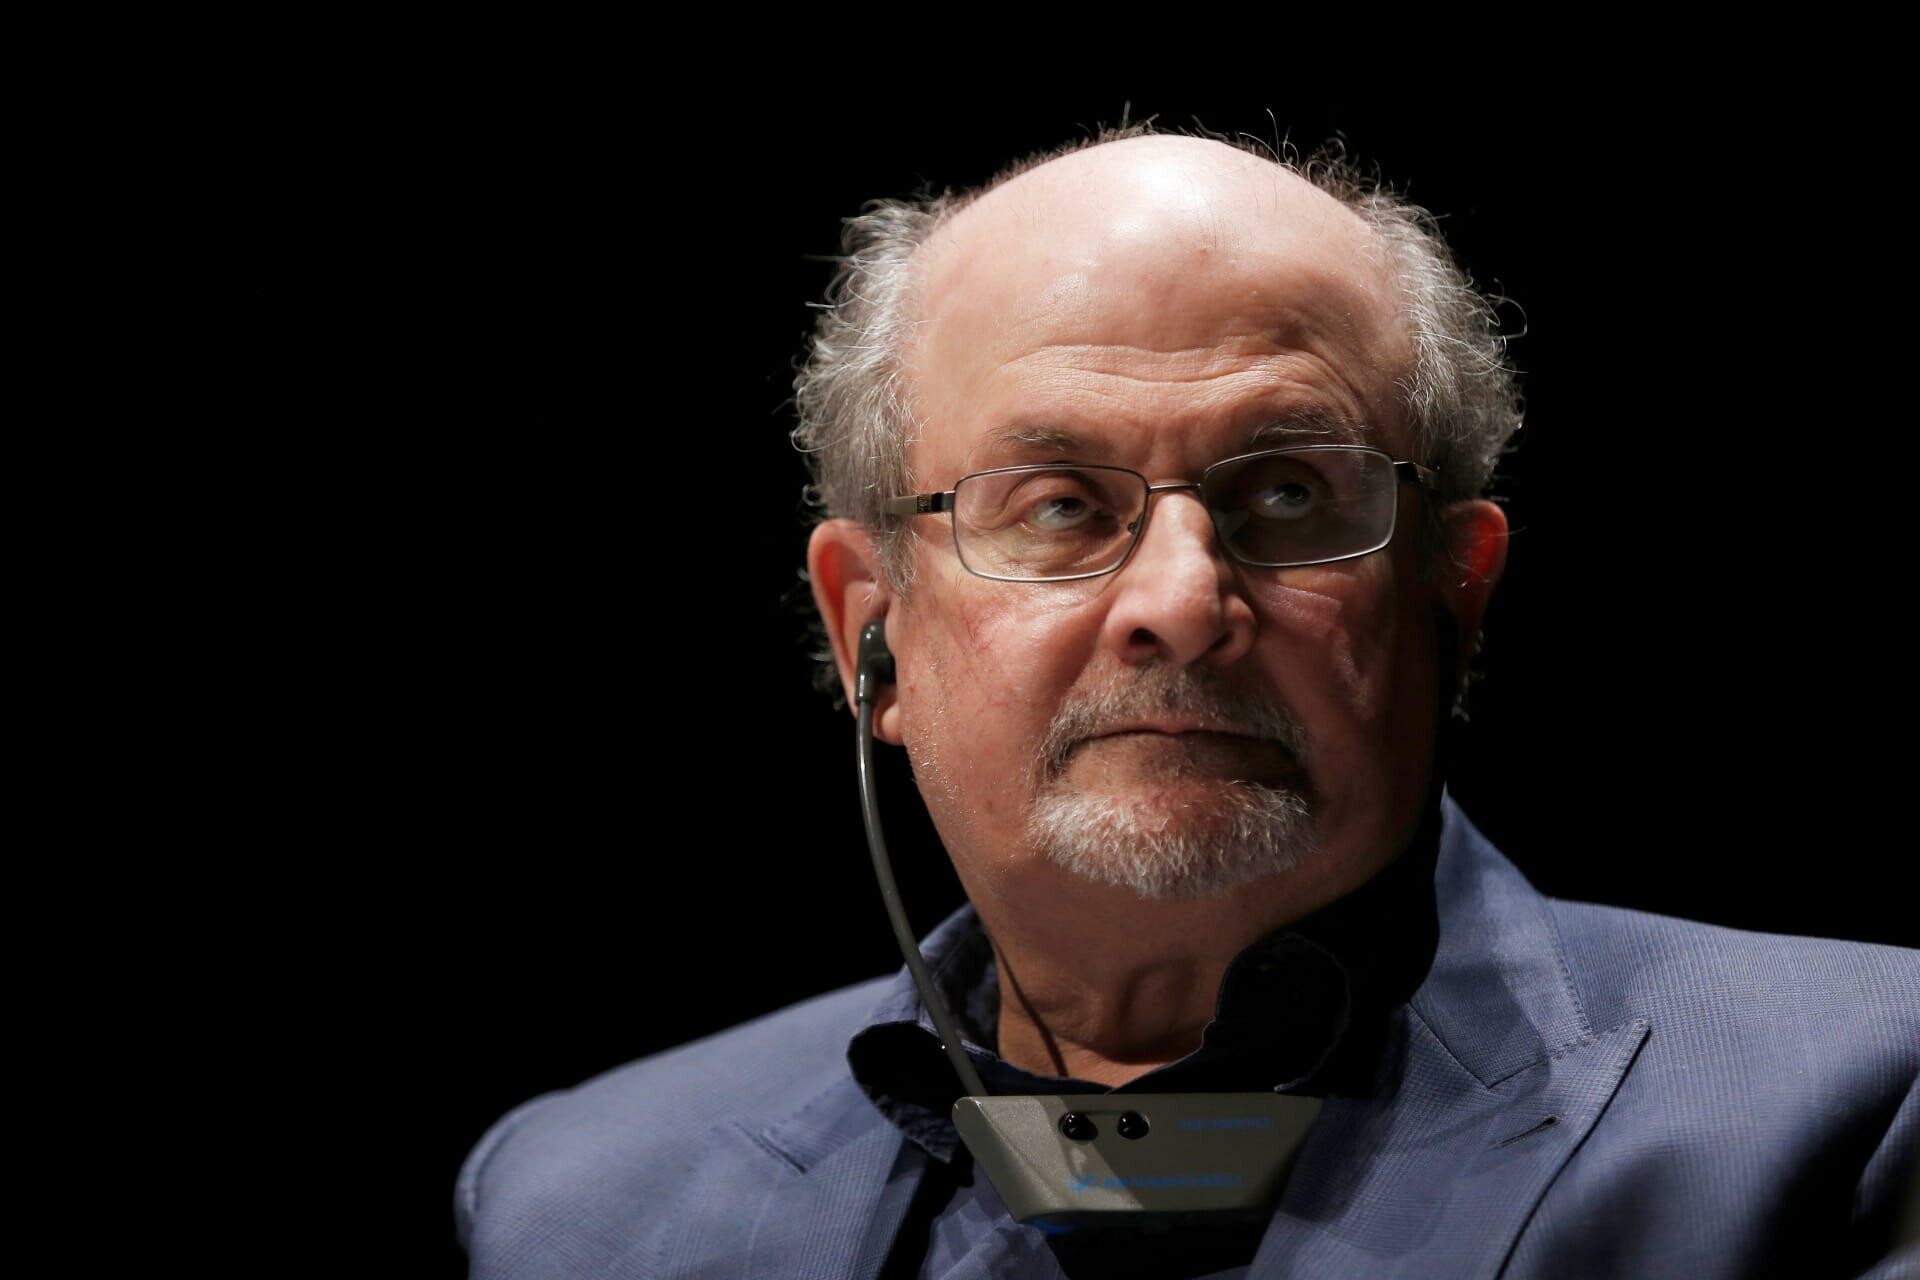 جونسون يندد بطعن الكاتب البريطاني سلمان رشدي على خشبة مسرح في نيويورك 